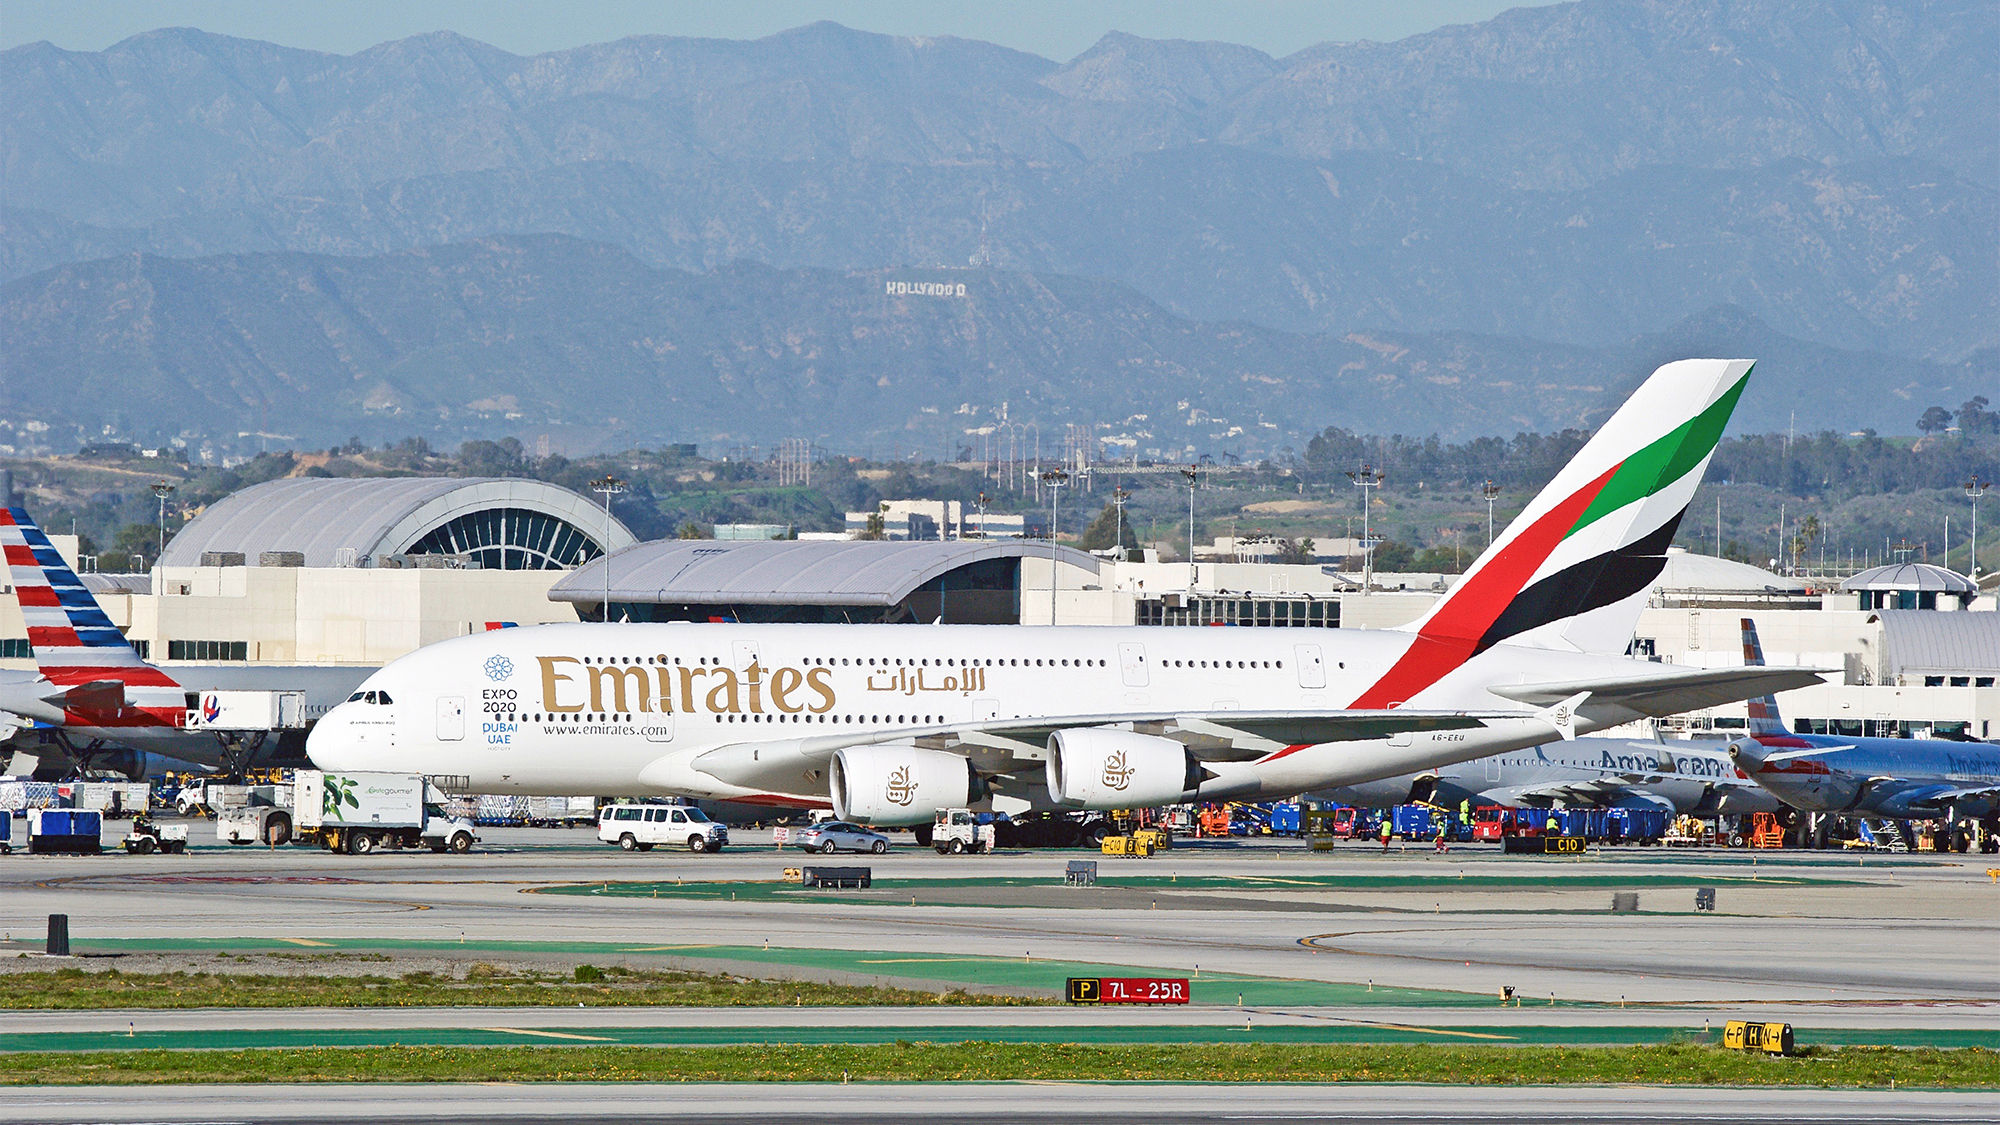 Emirates [Credit: Philip Pilosian/Shutterstock.com]